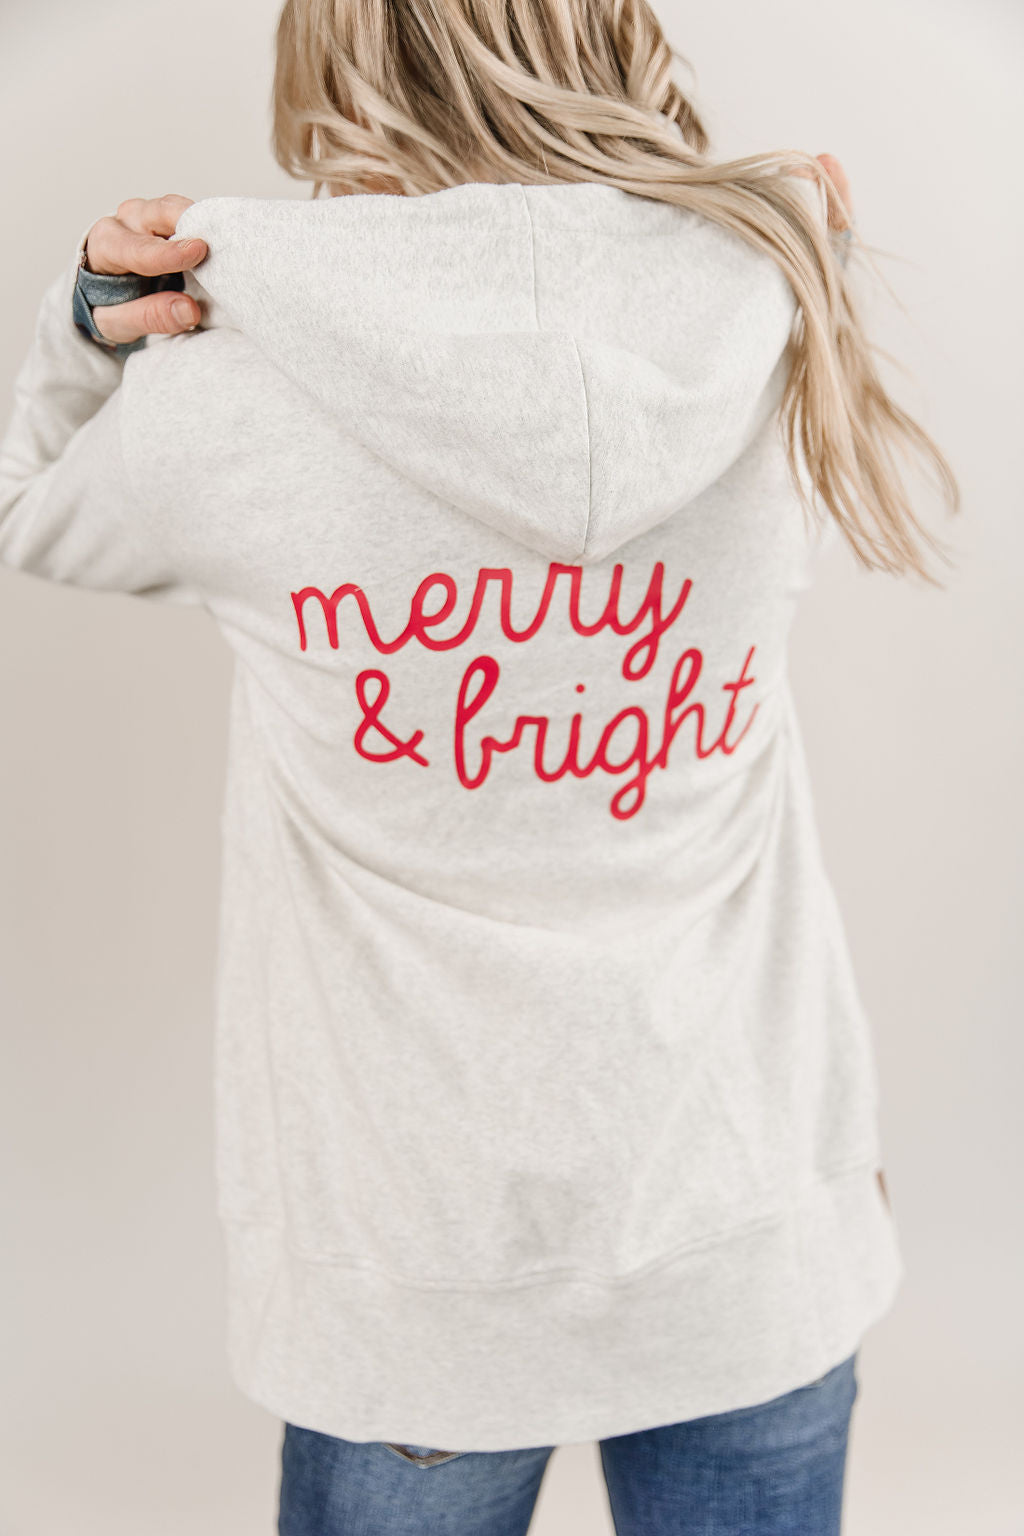 FullZip Hoodie - Merry & Bright - Mindy Mae's Marketcomfy cute hoodies